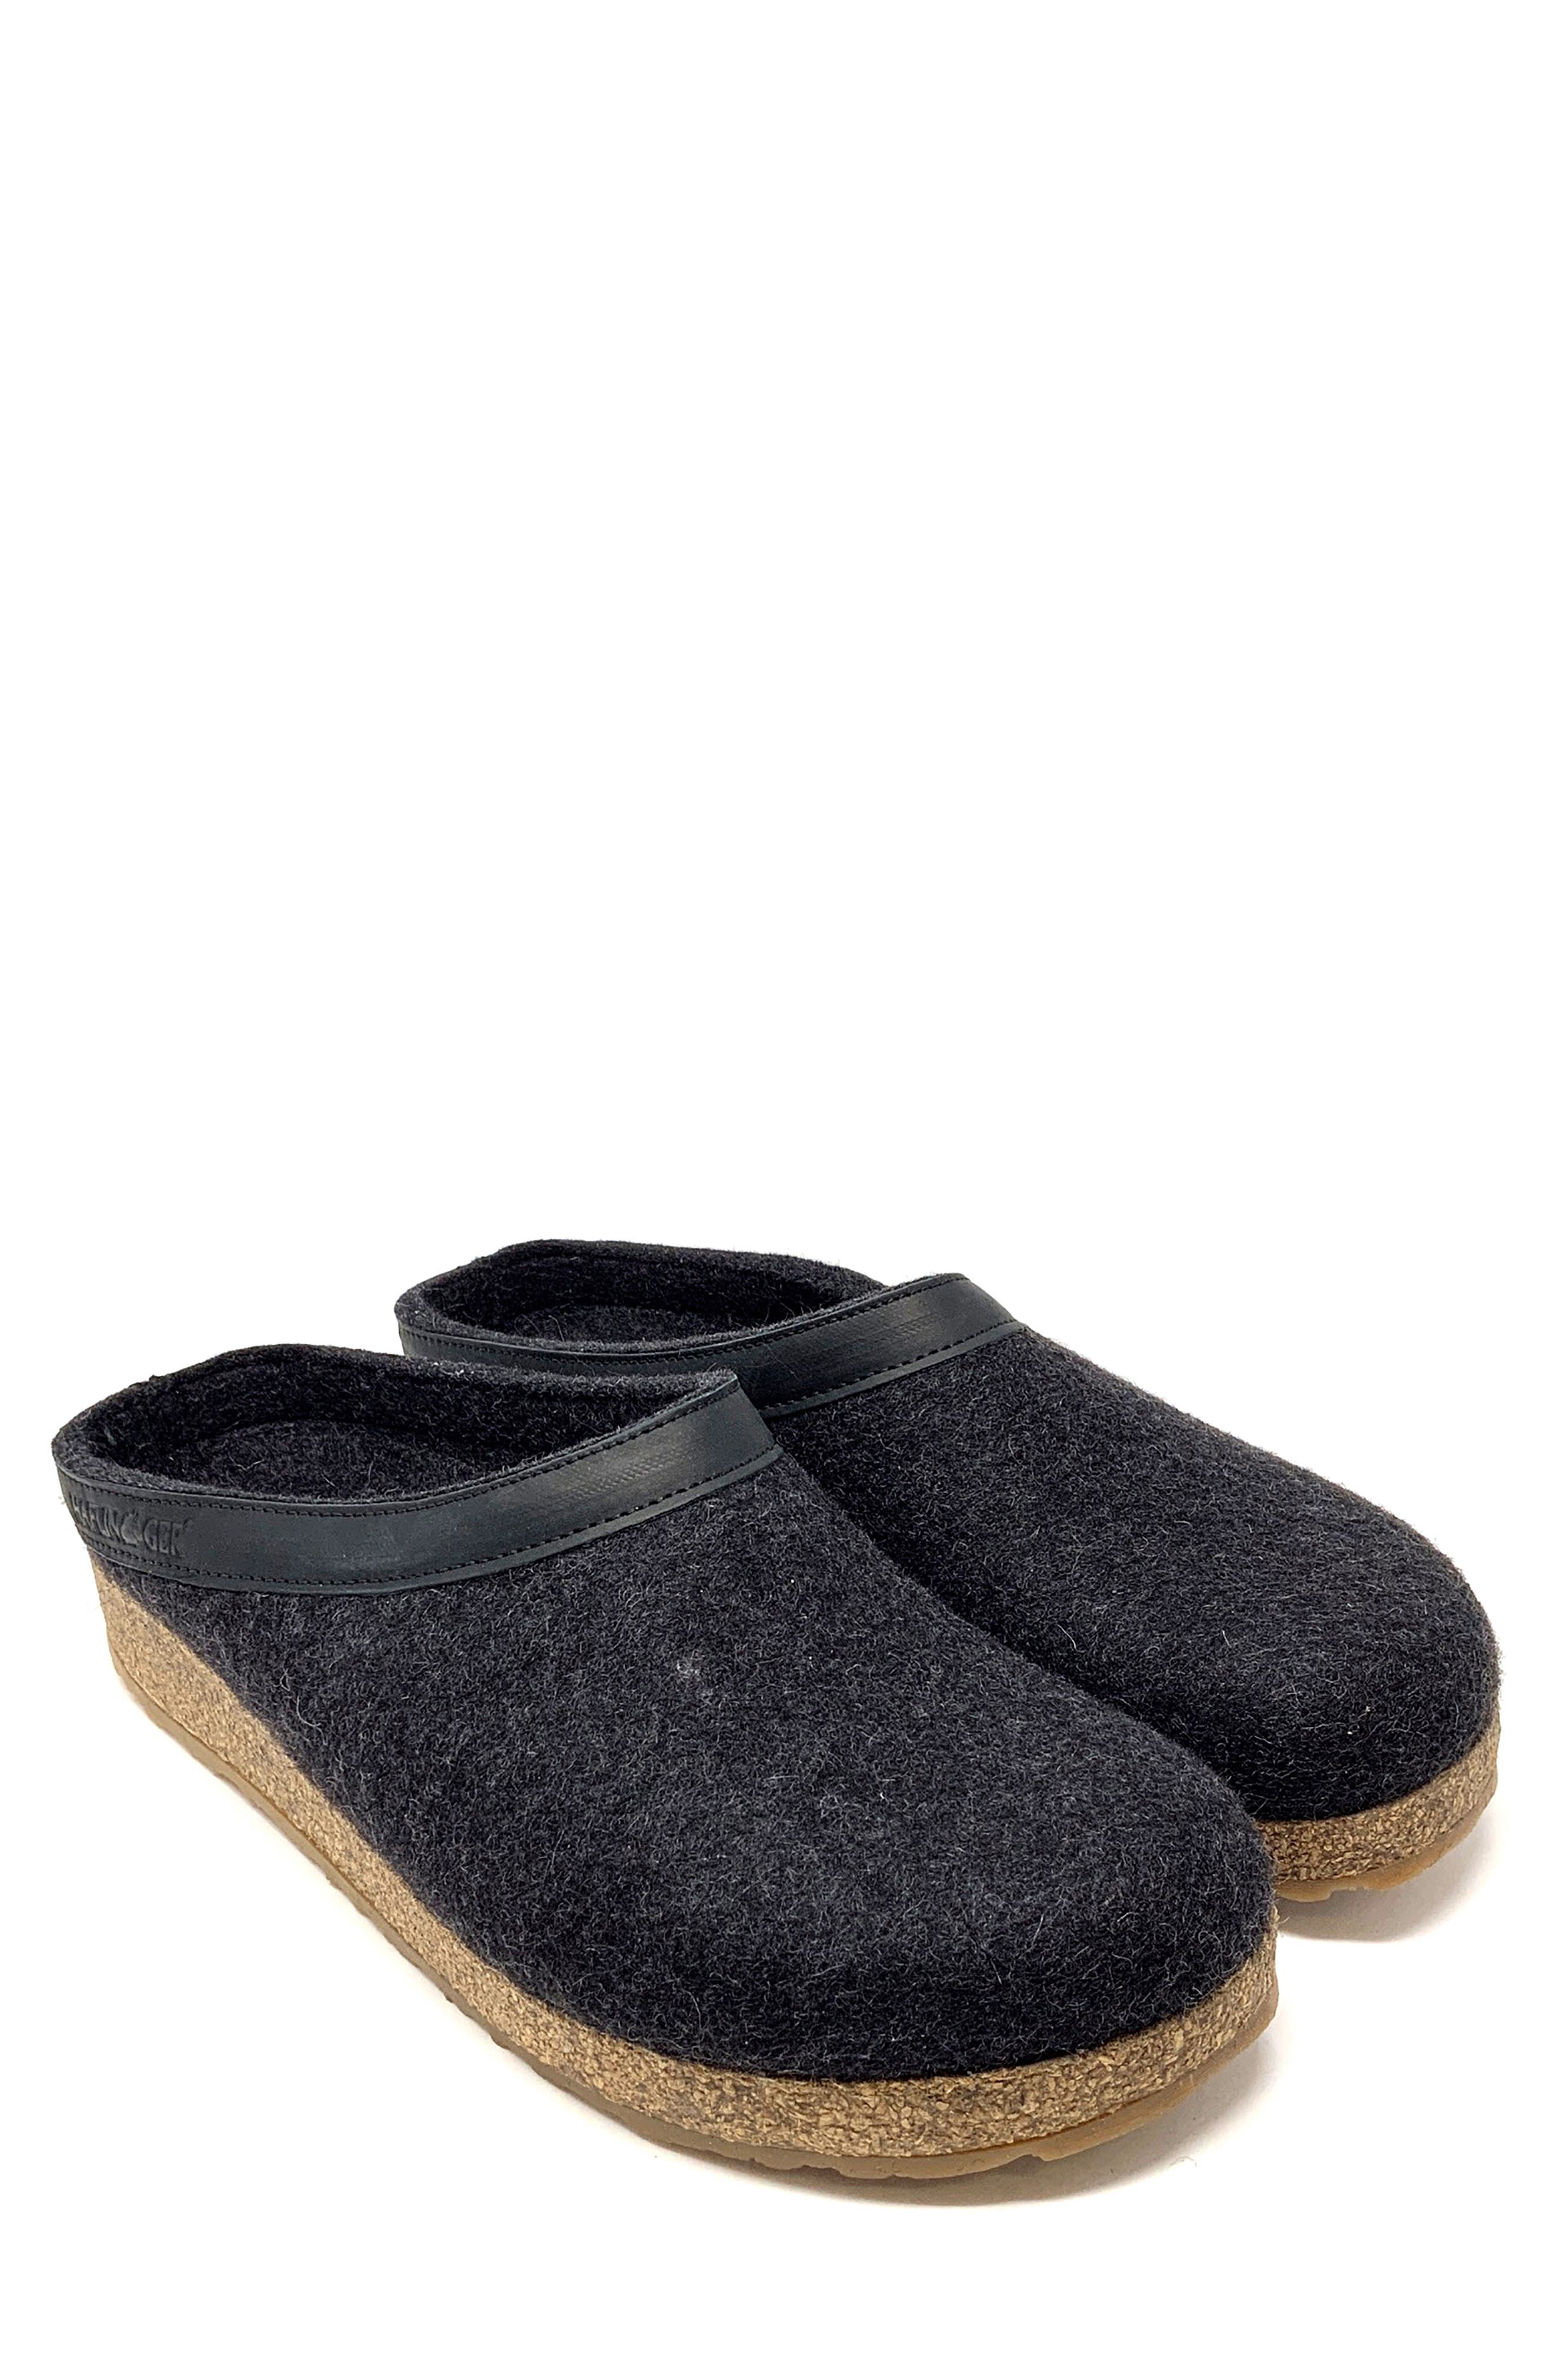 haflinger moccasin slippers